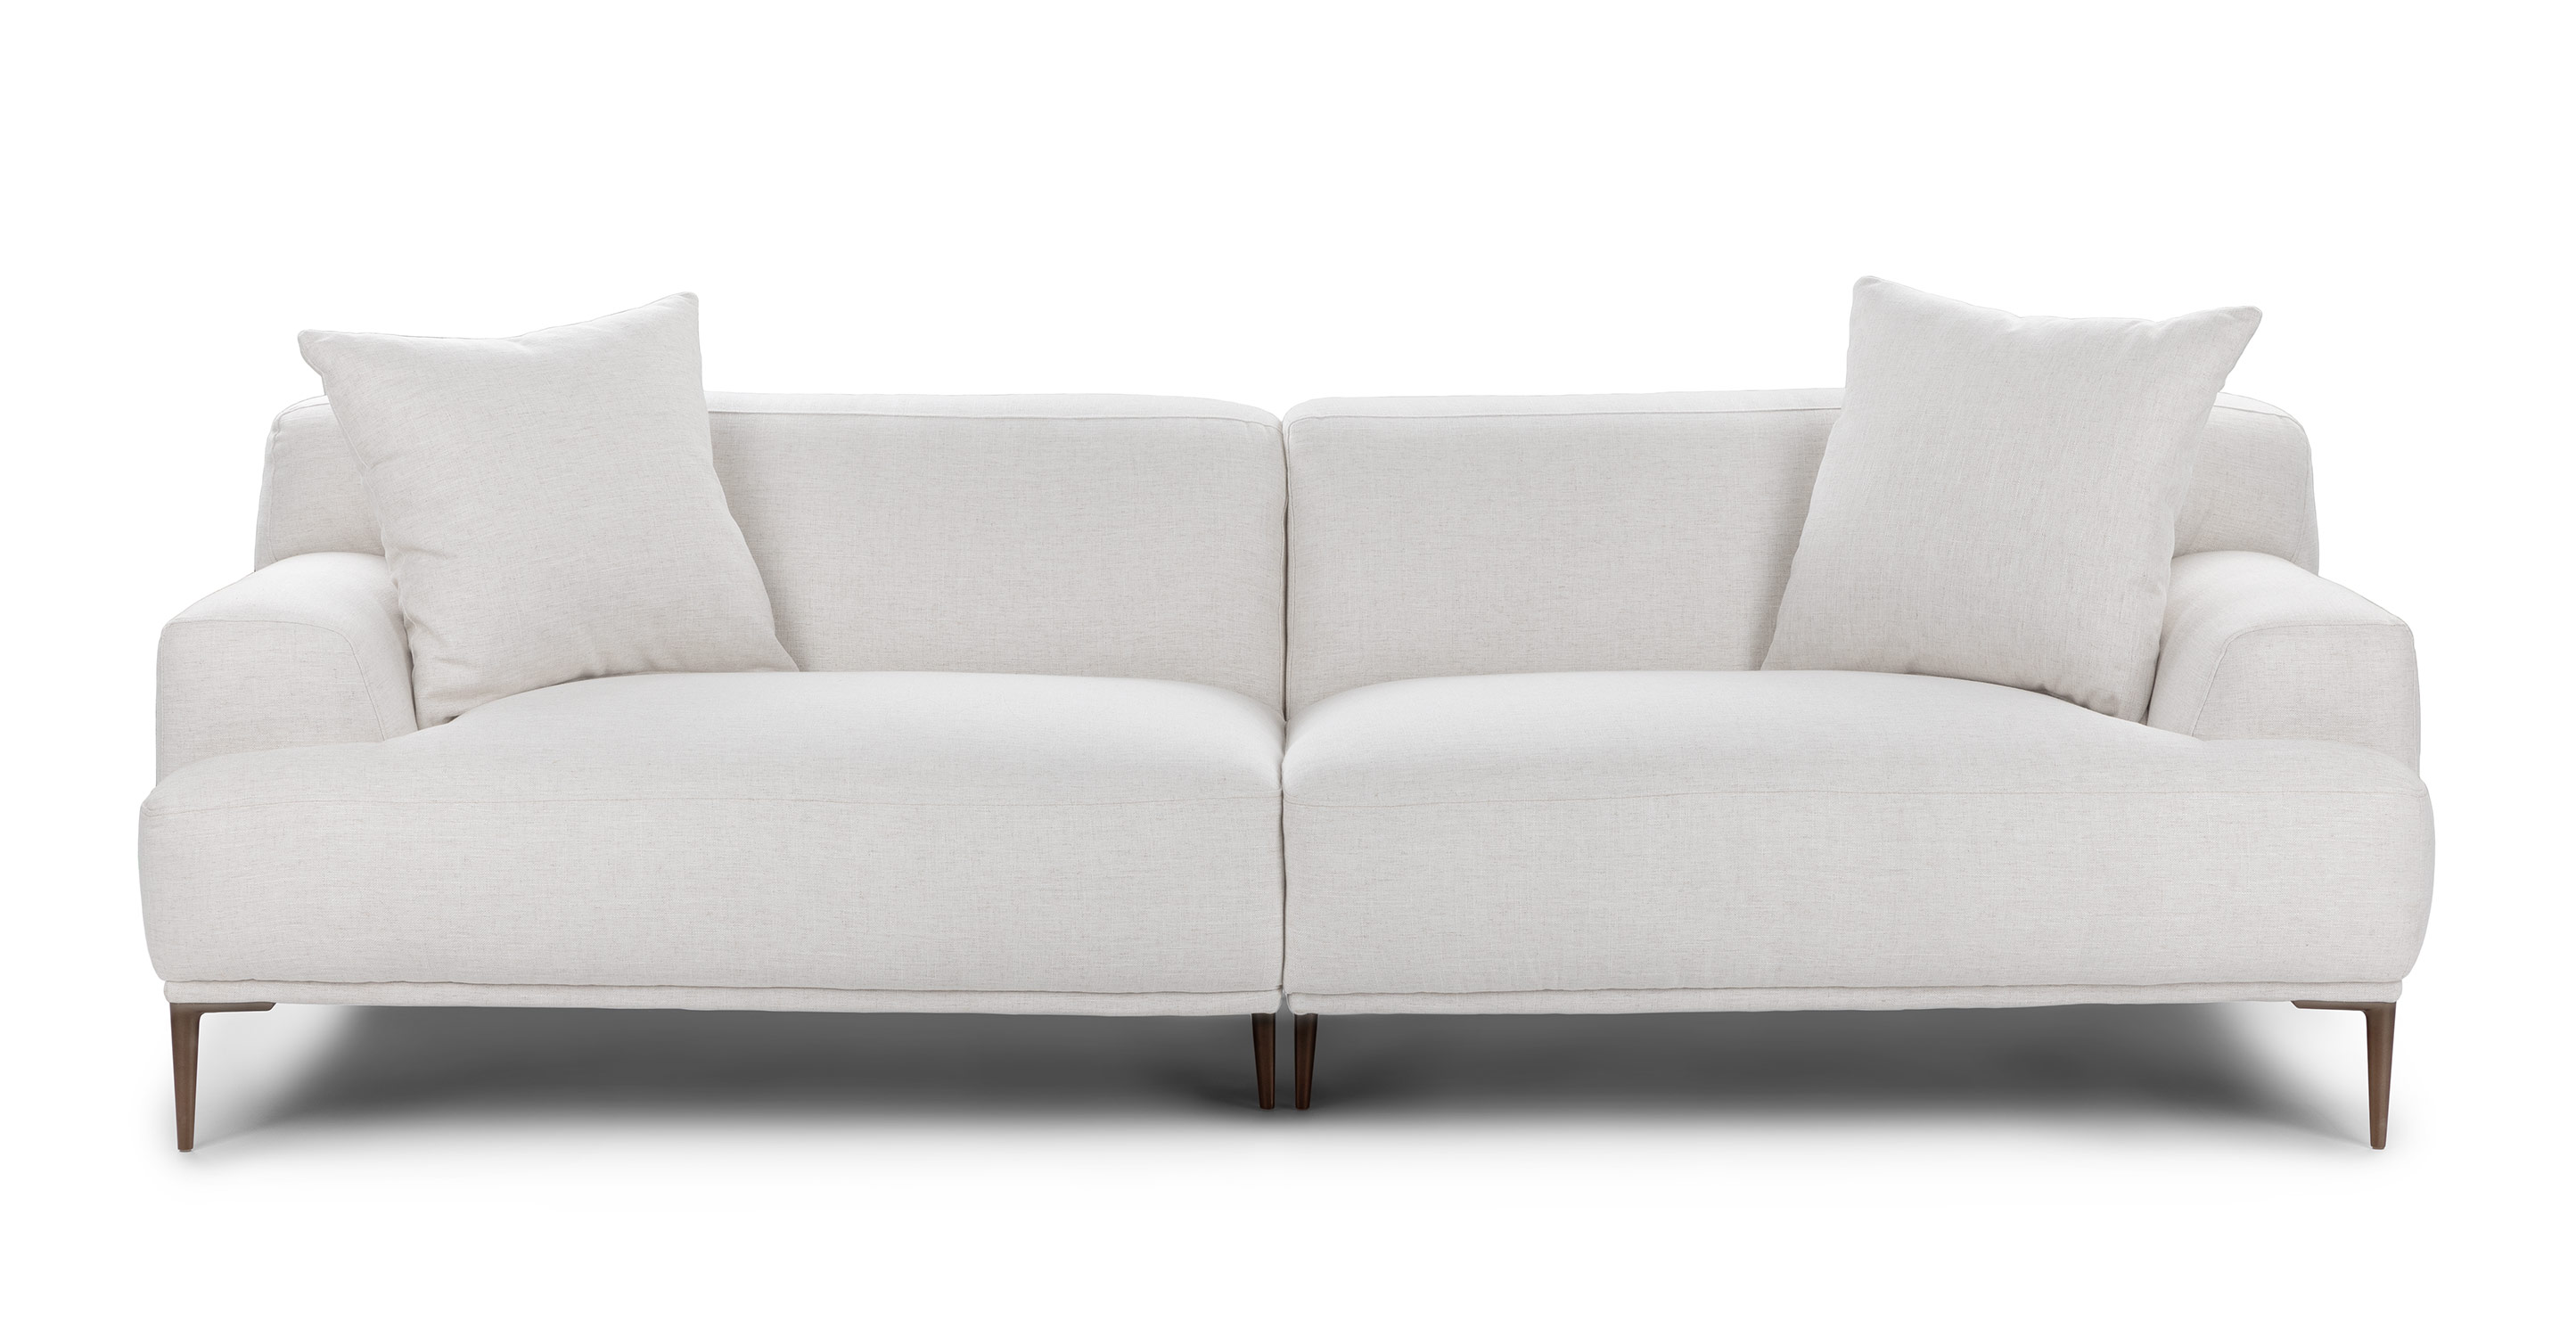 Abisko Quartz White Fabric Sofa Article